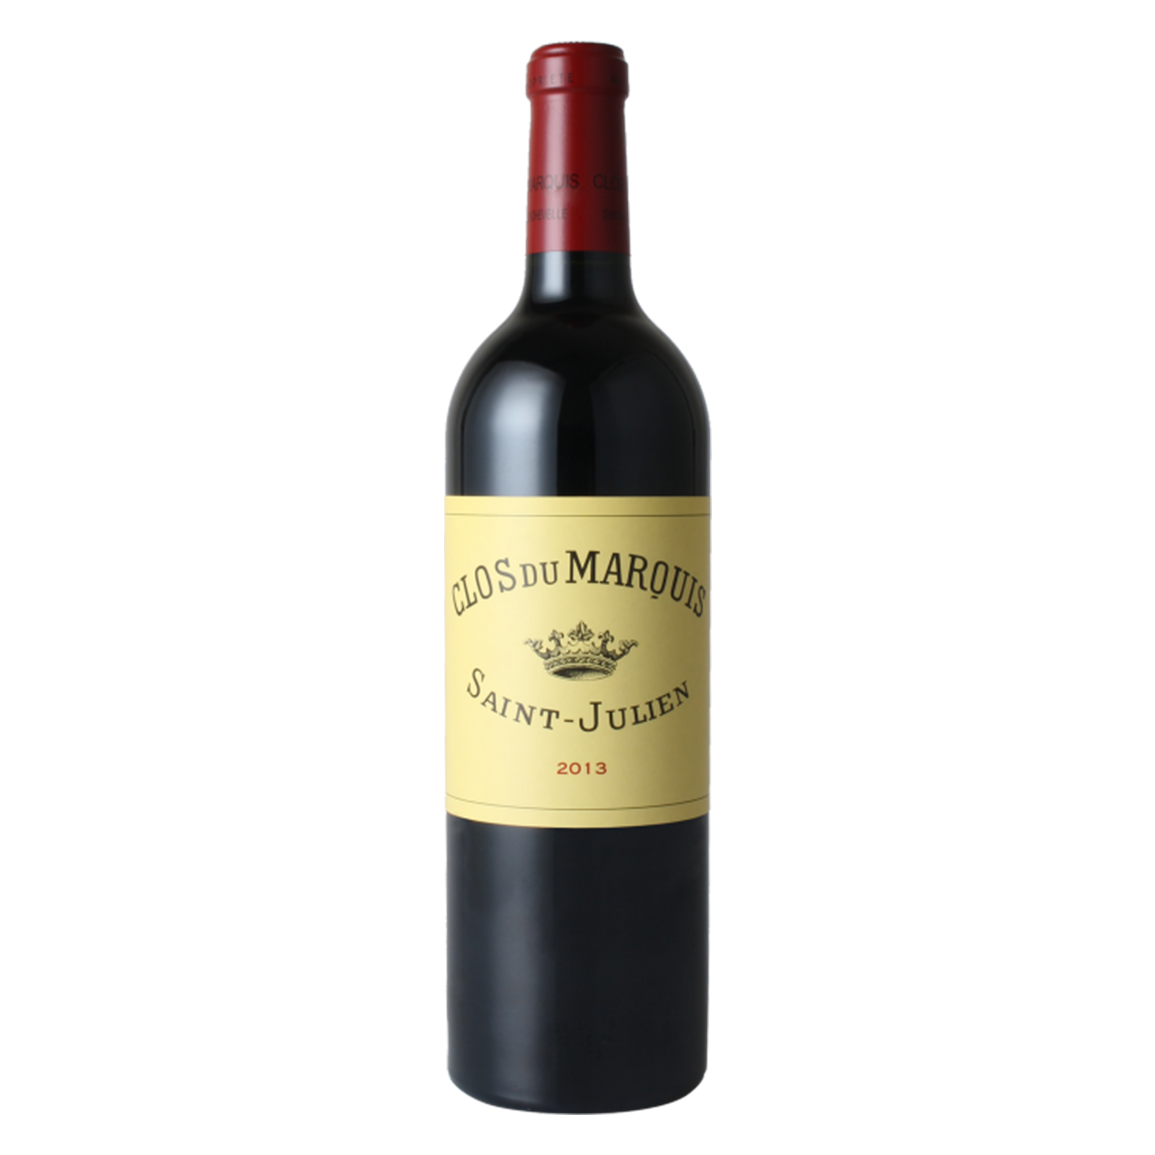 Saint-Julien Clos du Marquis 2013 紅酒